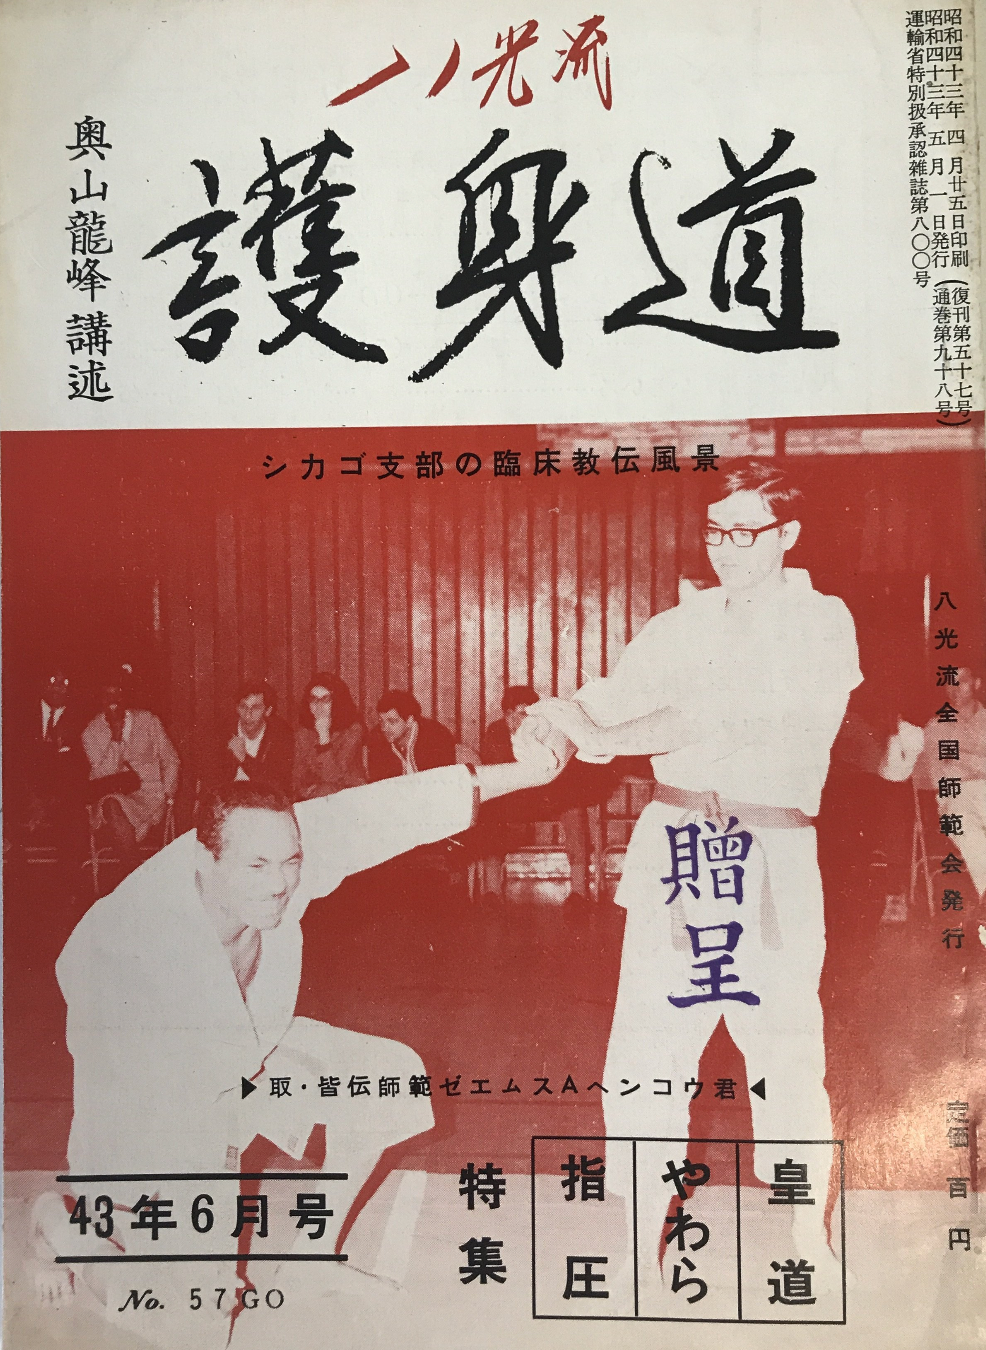 Hakko Ryu Jujutsu Magazine #57 June 1968 (Preowned) - Budovideos Inc